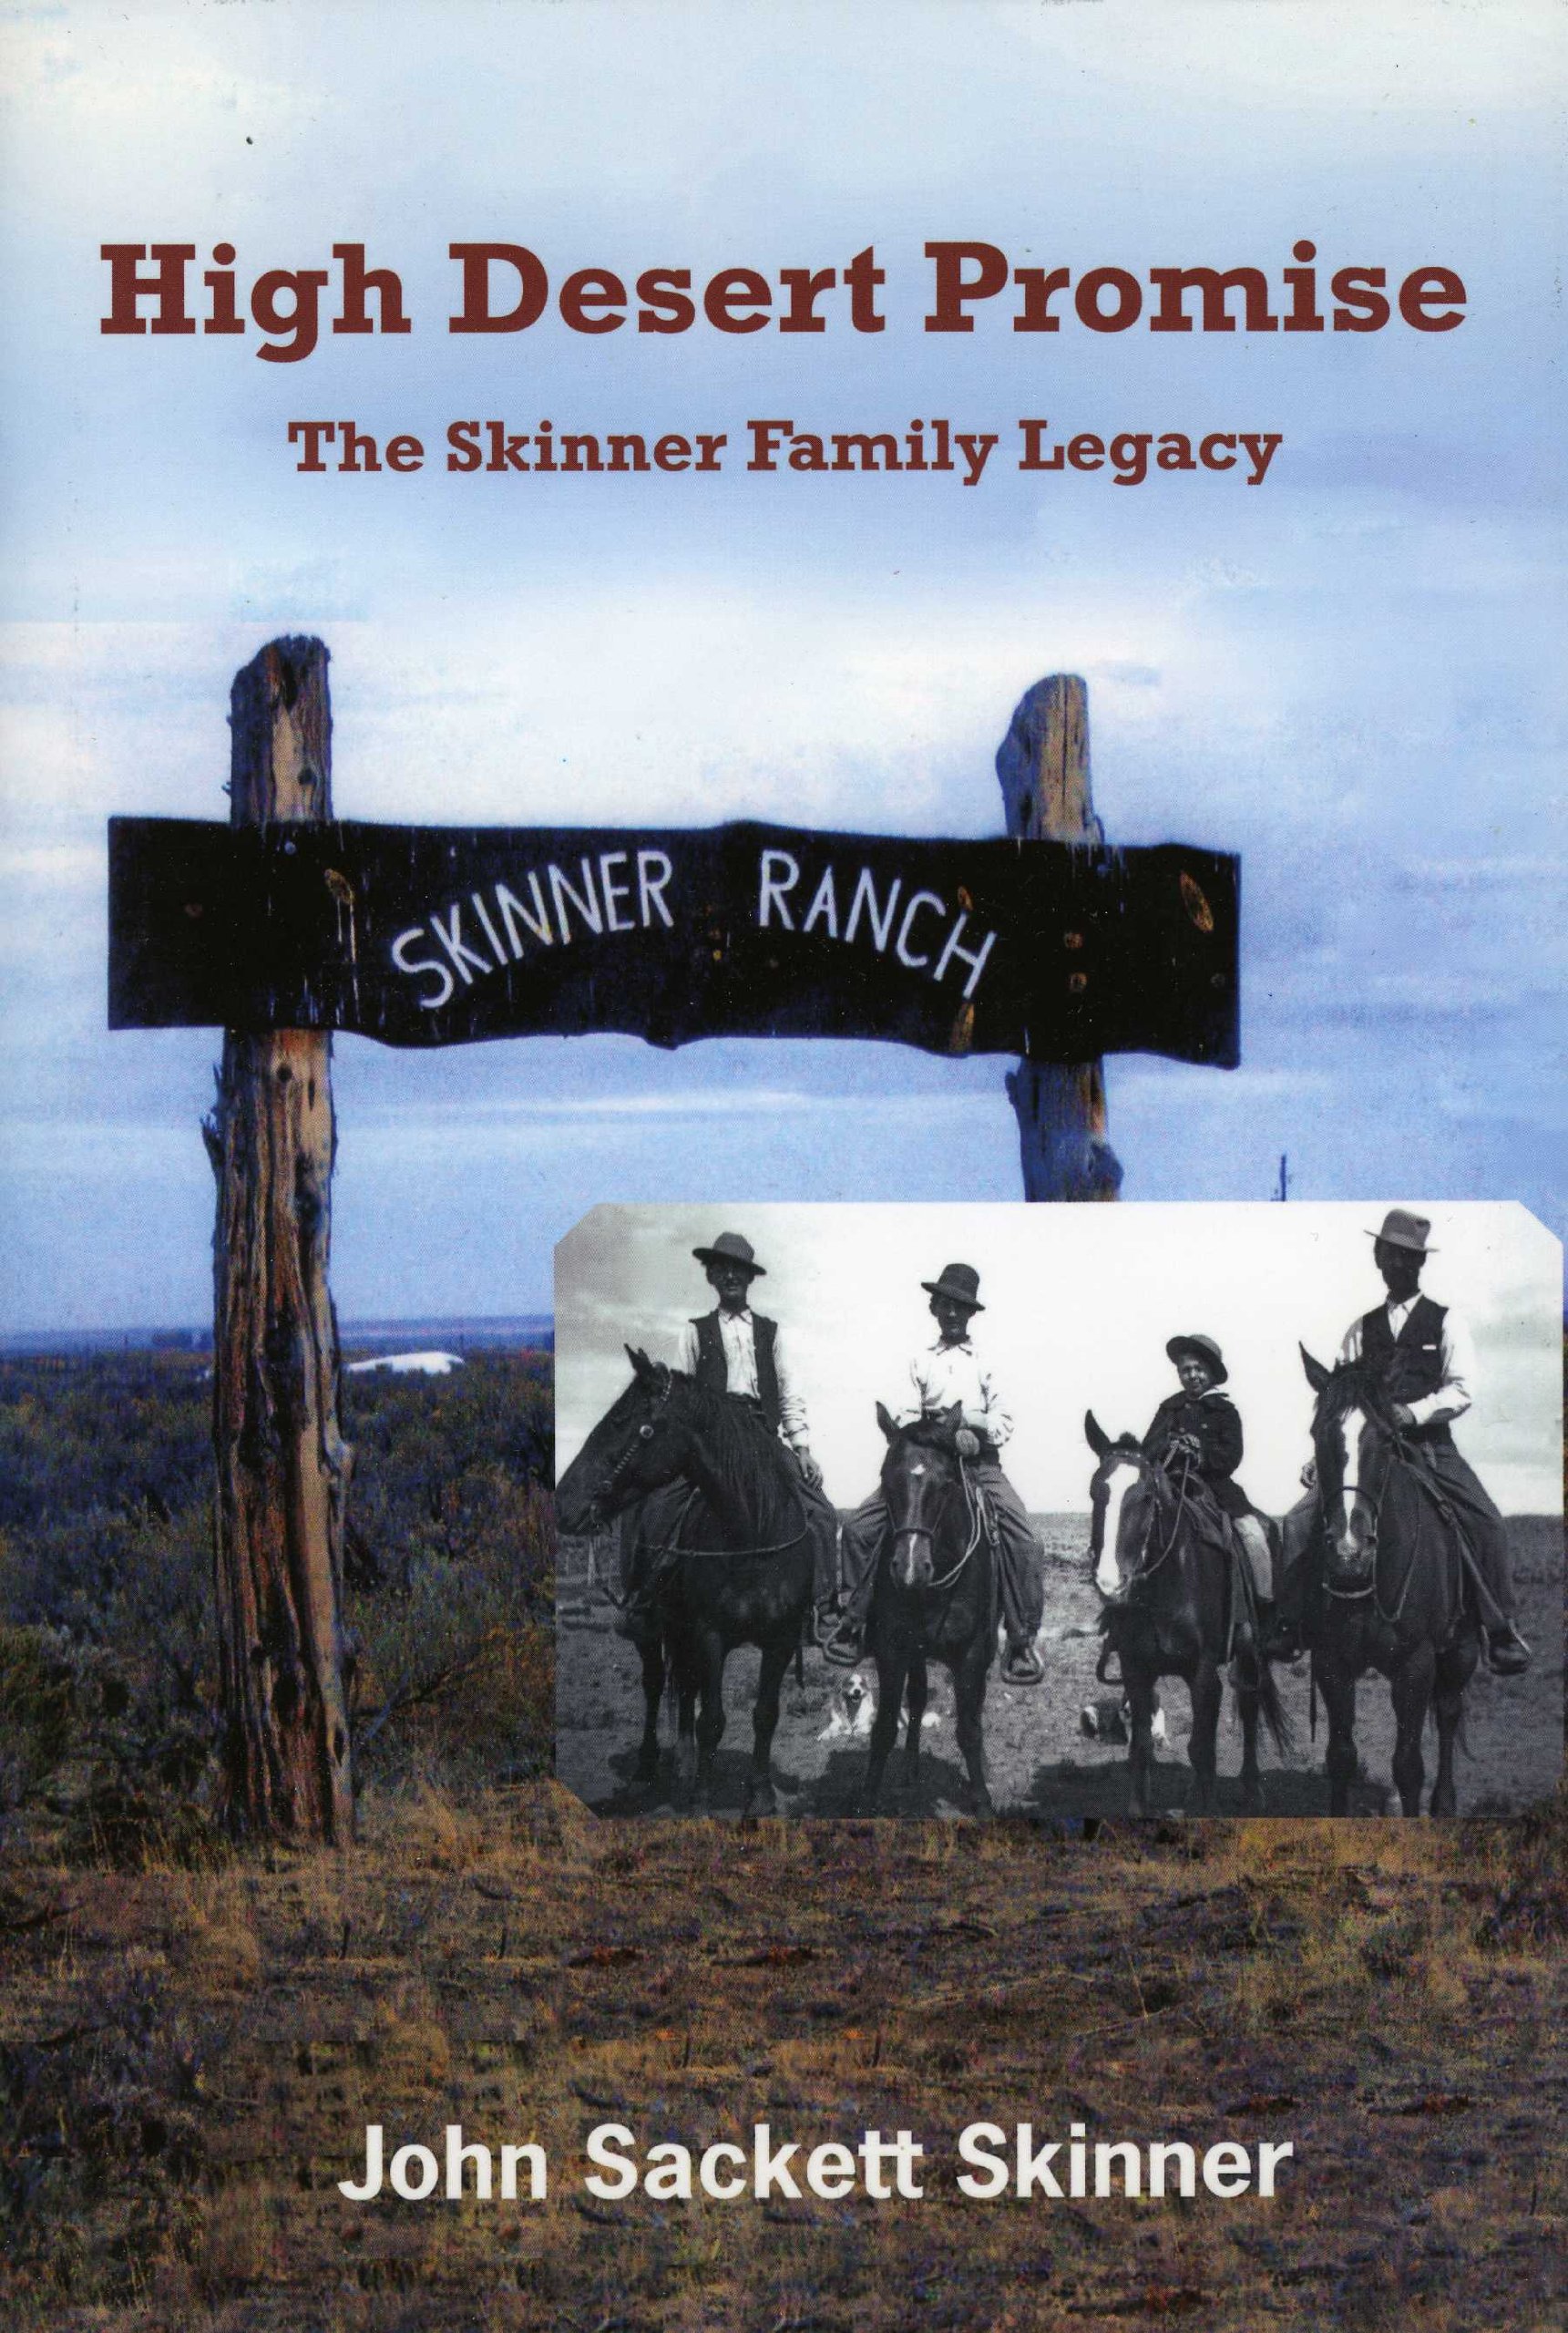 High desert promise: The Skinner family legacy (book cover)